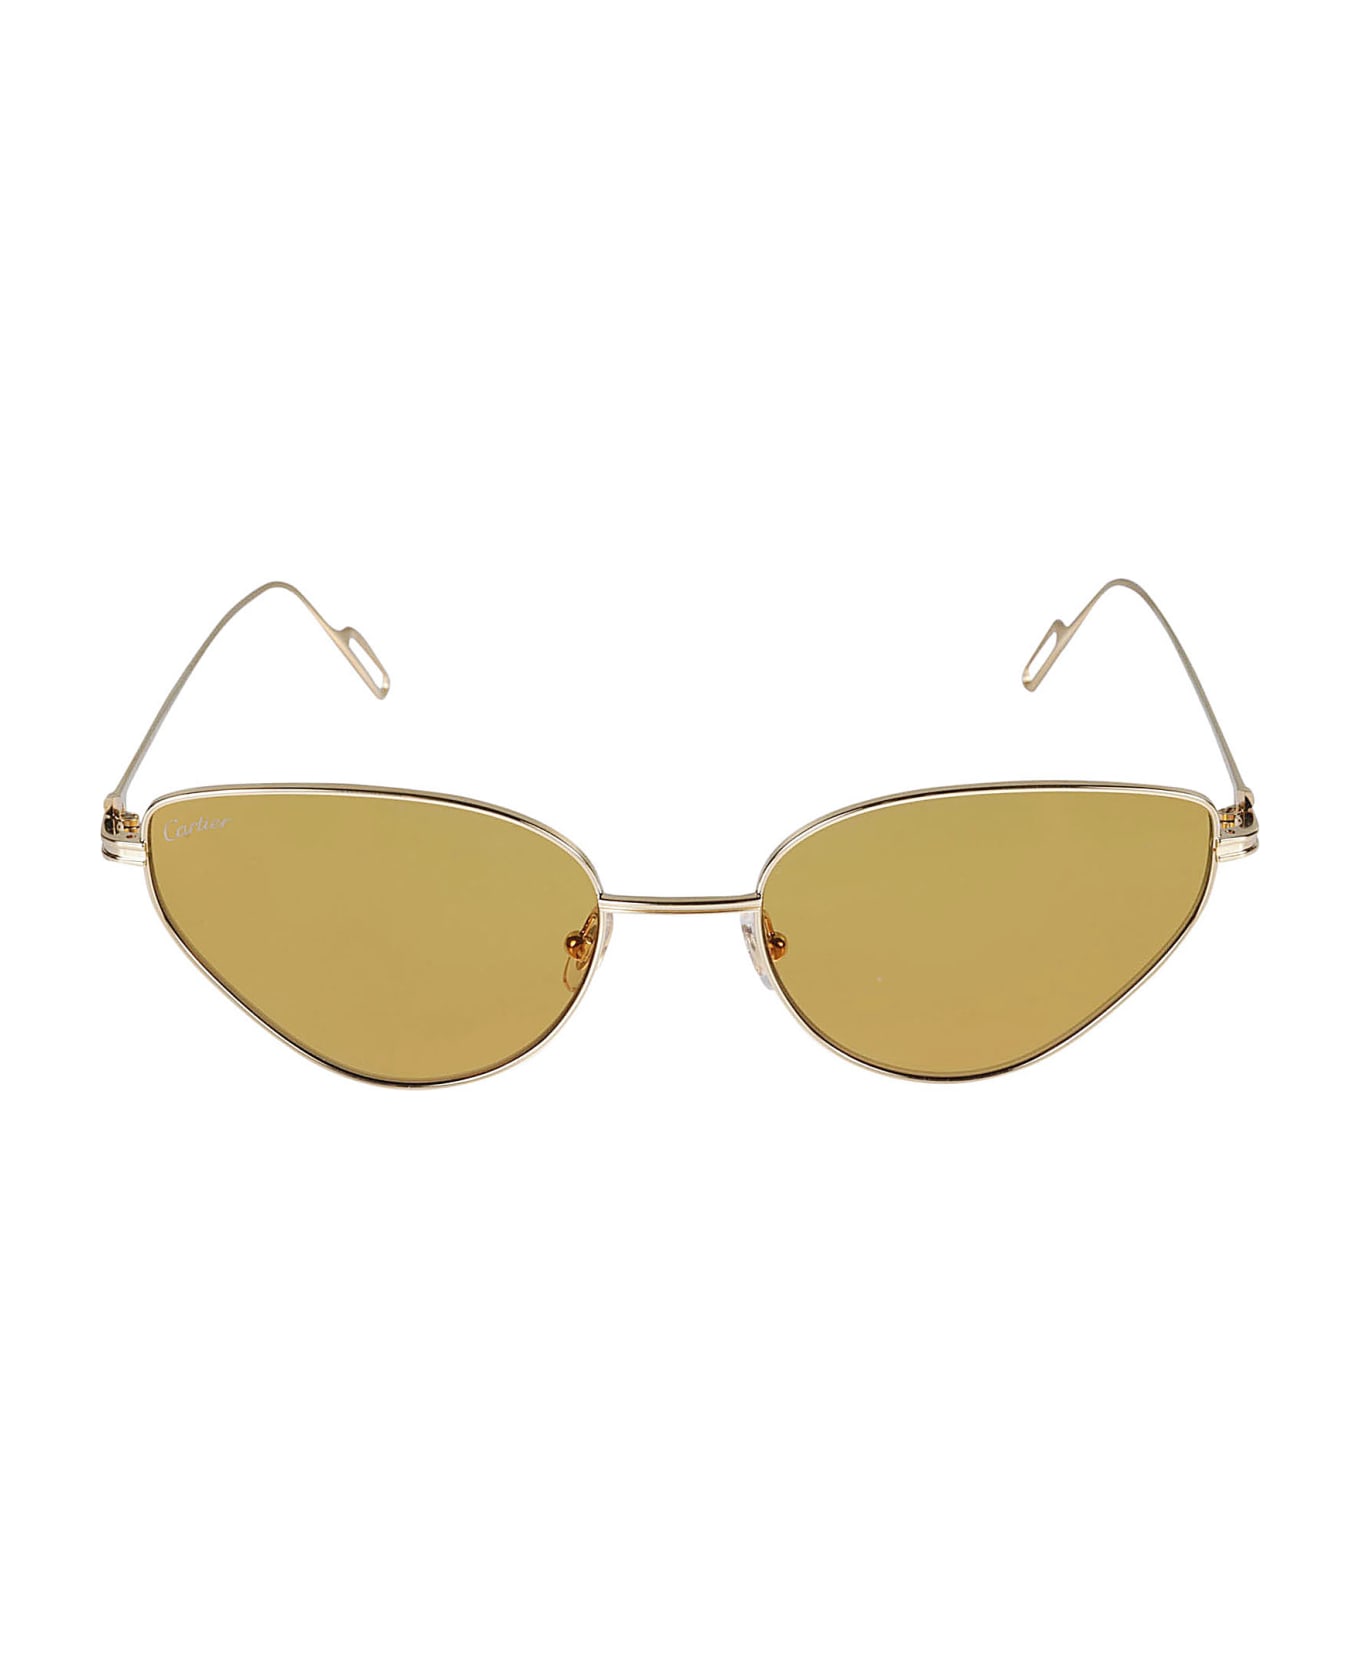 Cartier Eyewear Premiere De Cartier Sunglasses - Gold